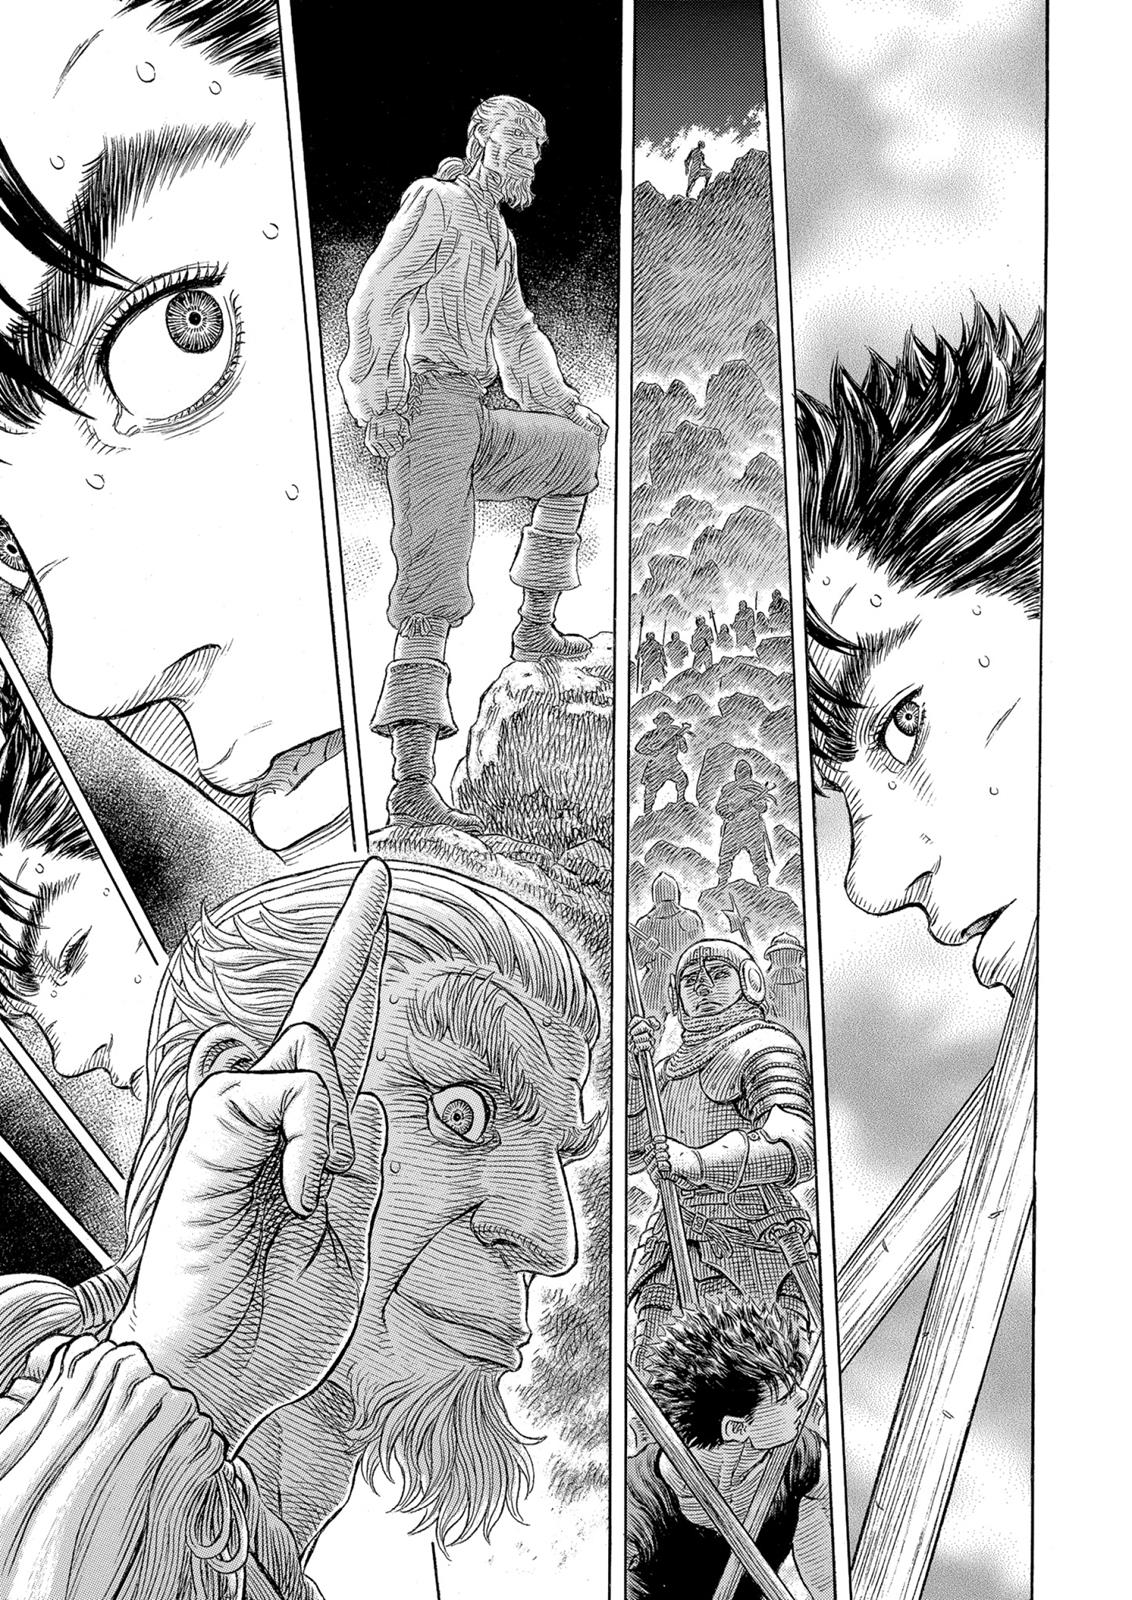 Berserk Manga Chapter 329 image 14